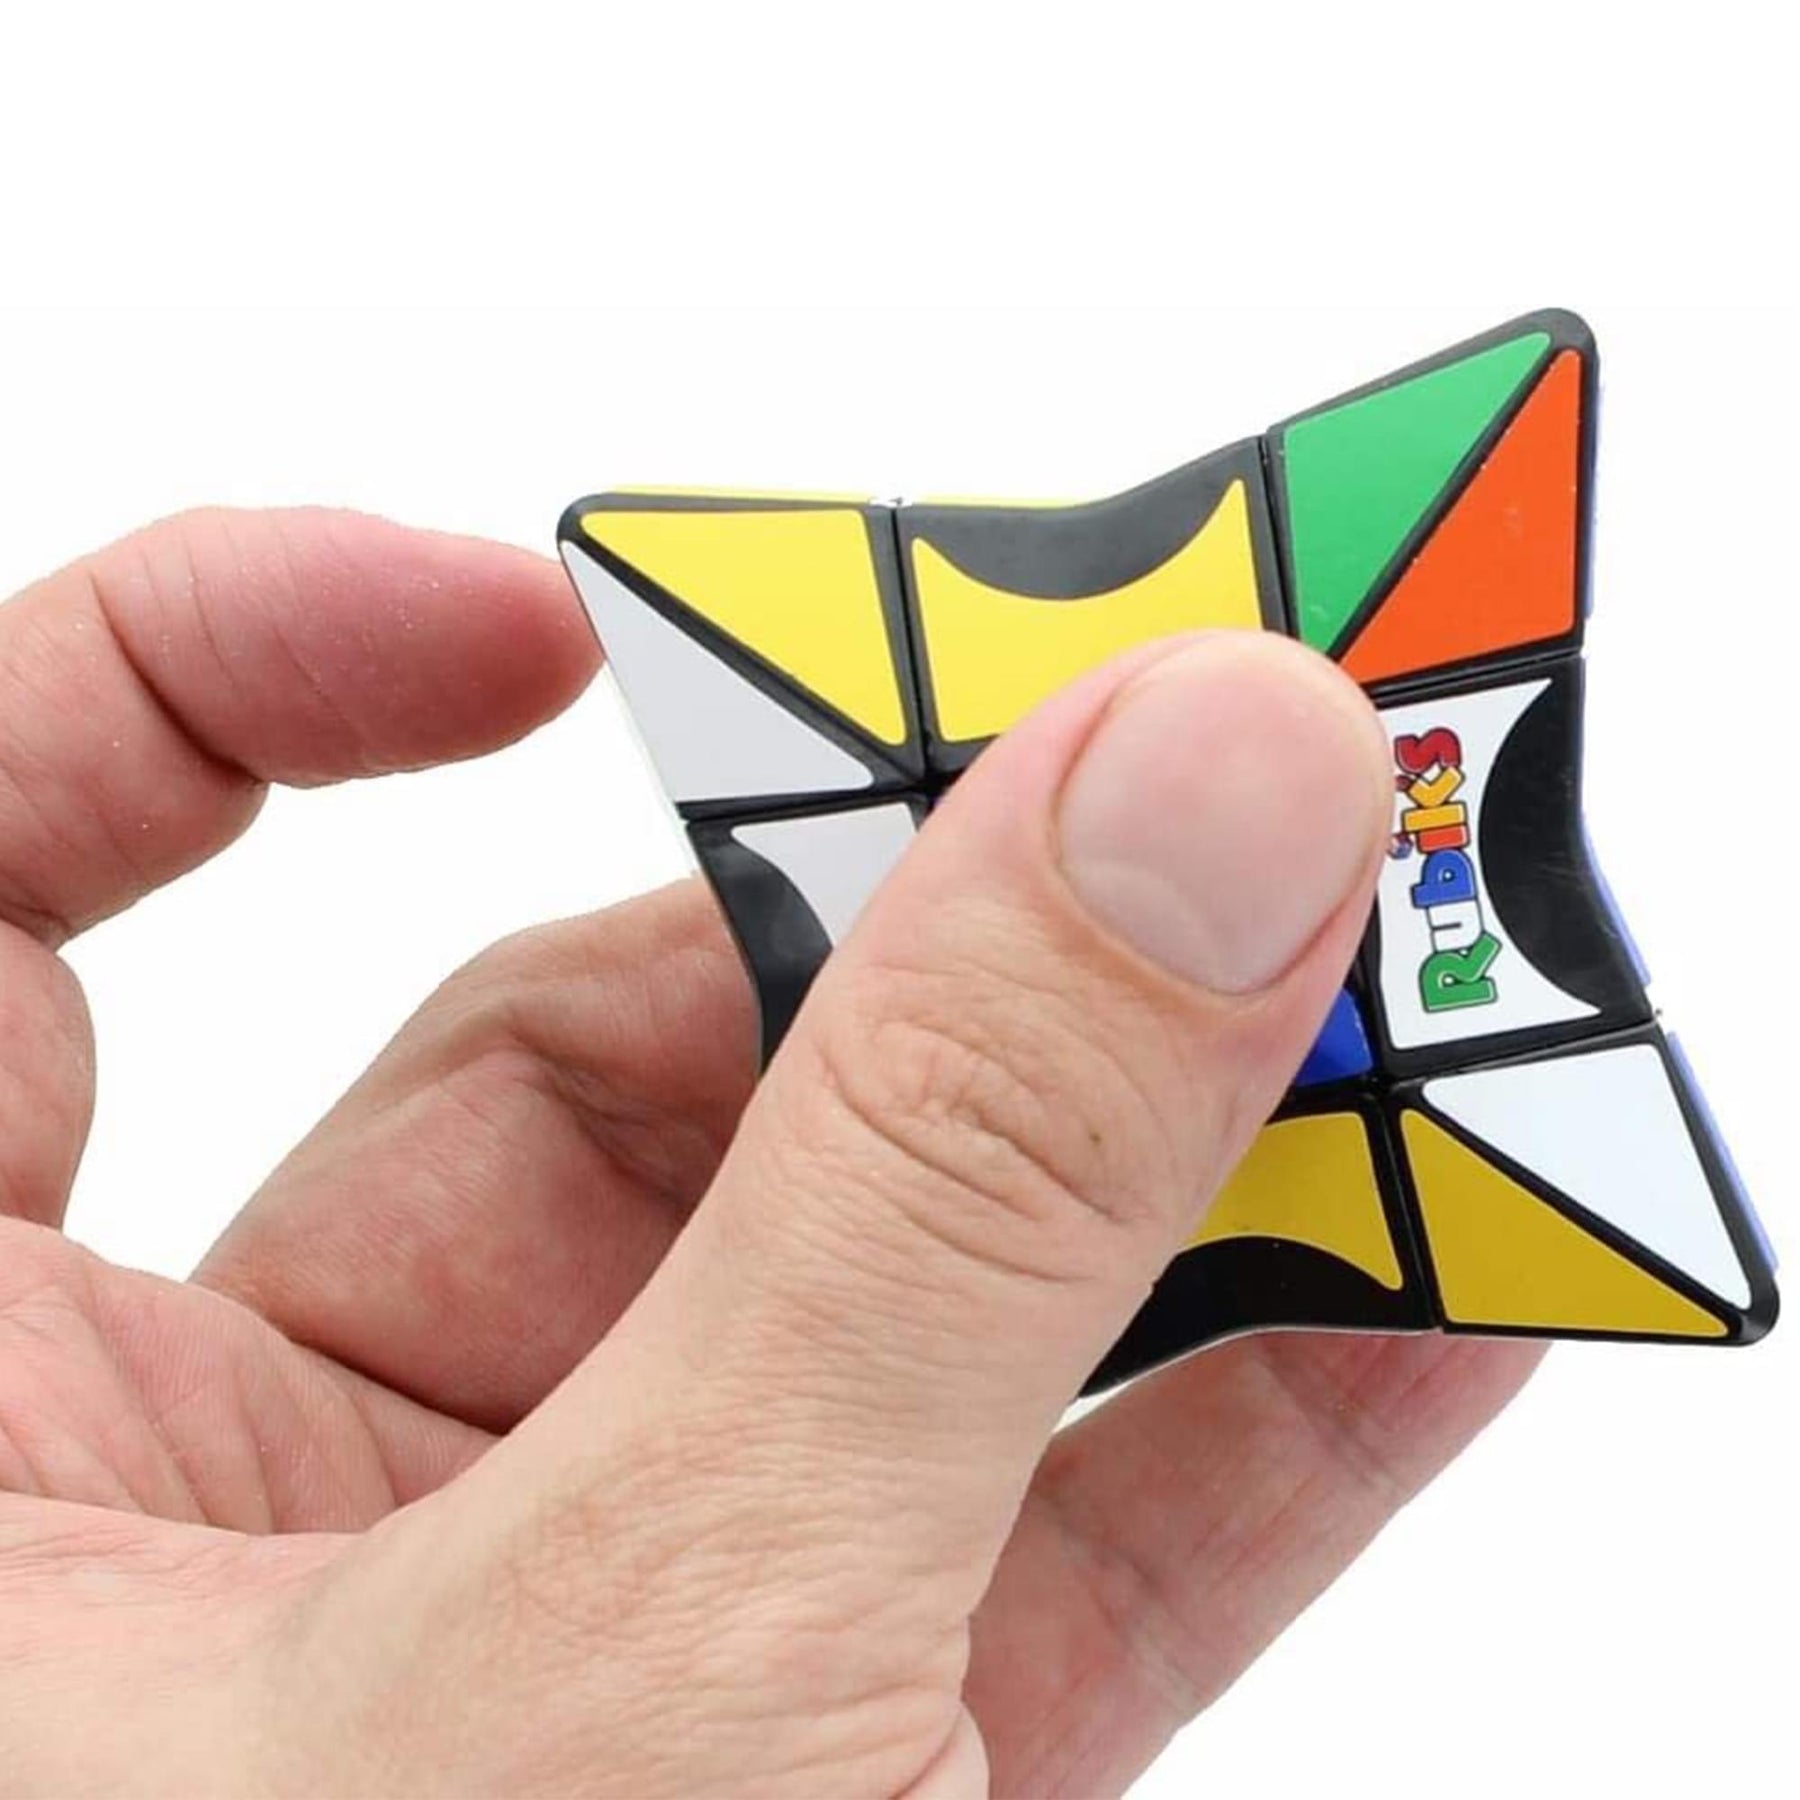 Rubik's Magic Star Spinner M-2 Design